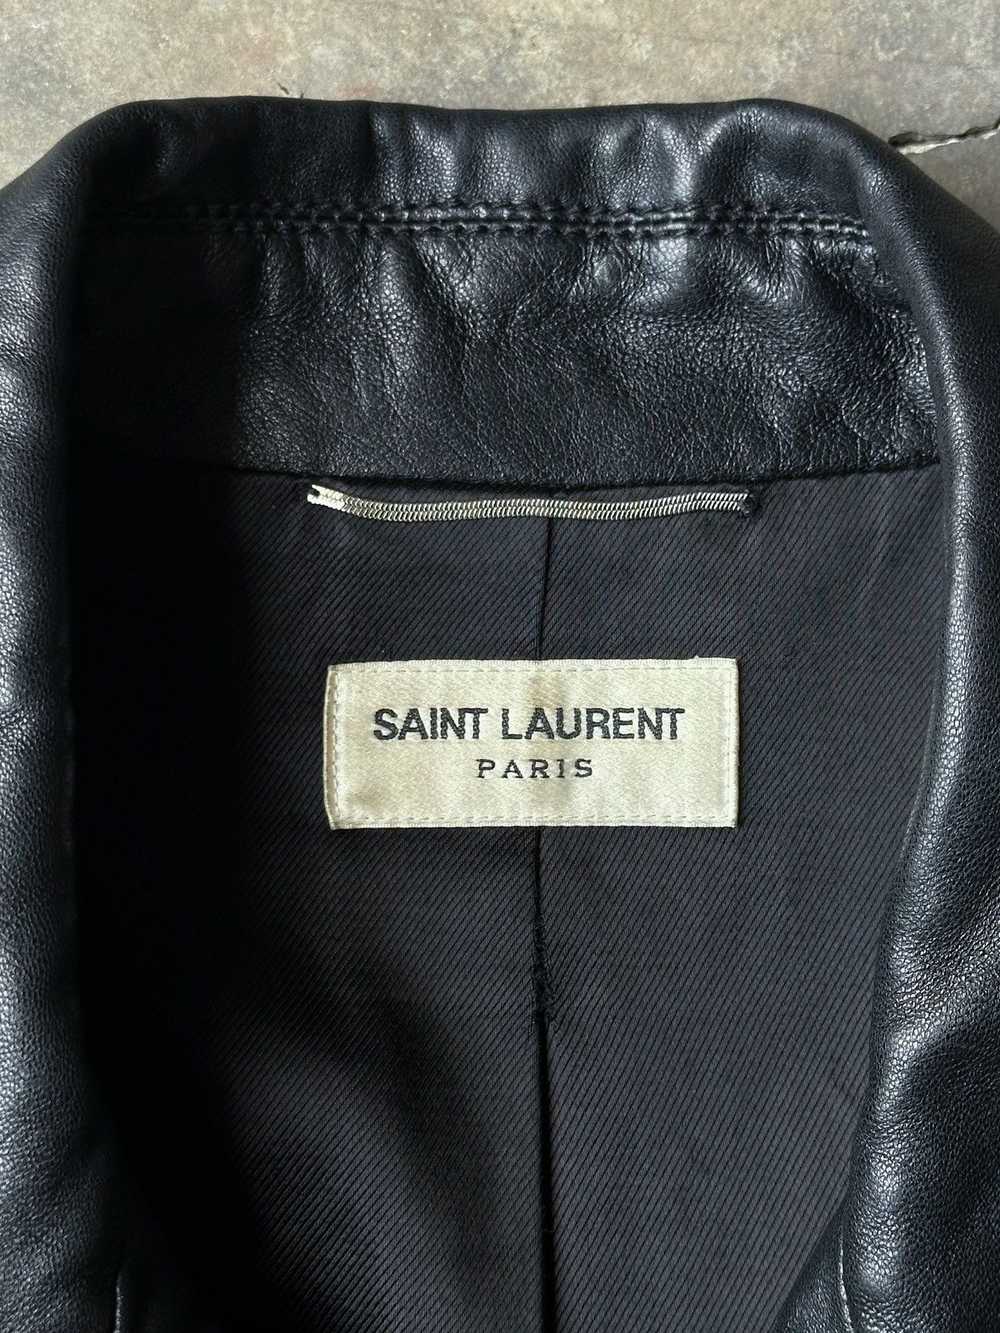 Saint Laurent Paris Saint Laurent Western Leather… - image 4